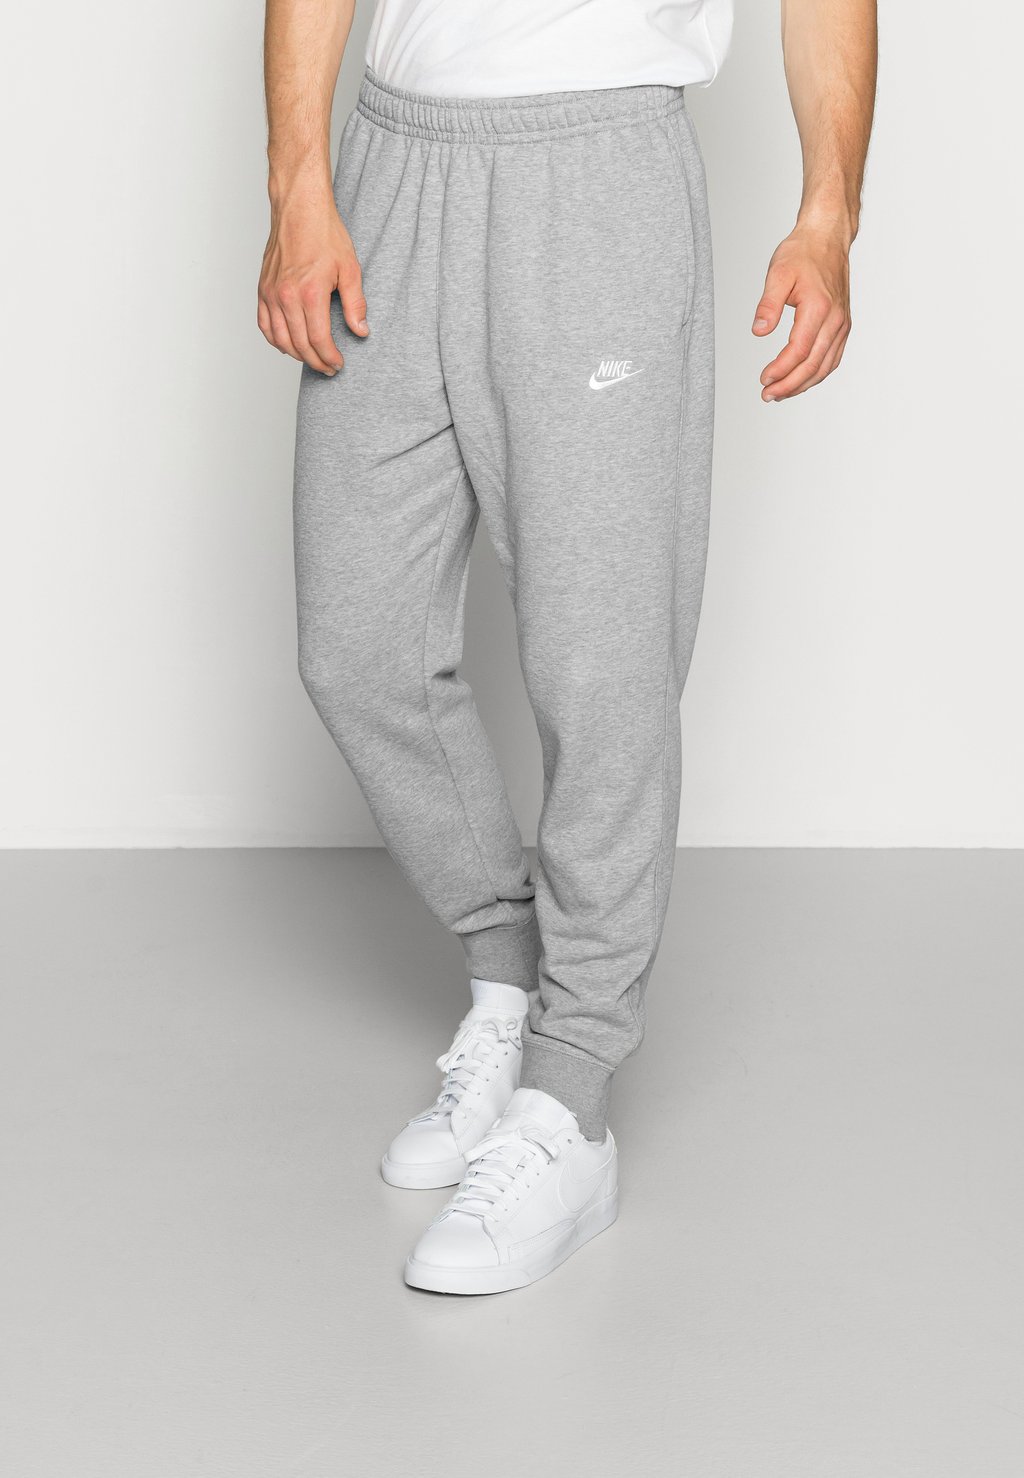 Спортивные брюки CLUB JGGR FT Nike, темно-серый вереск/матовое серебро/белый